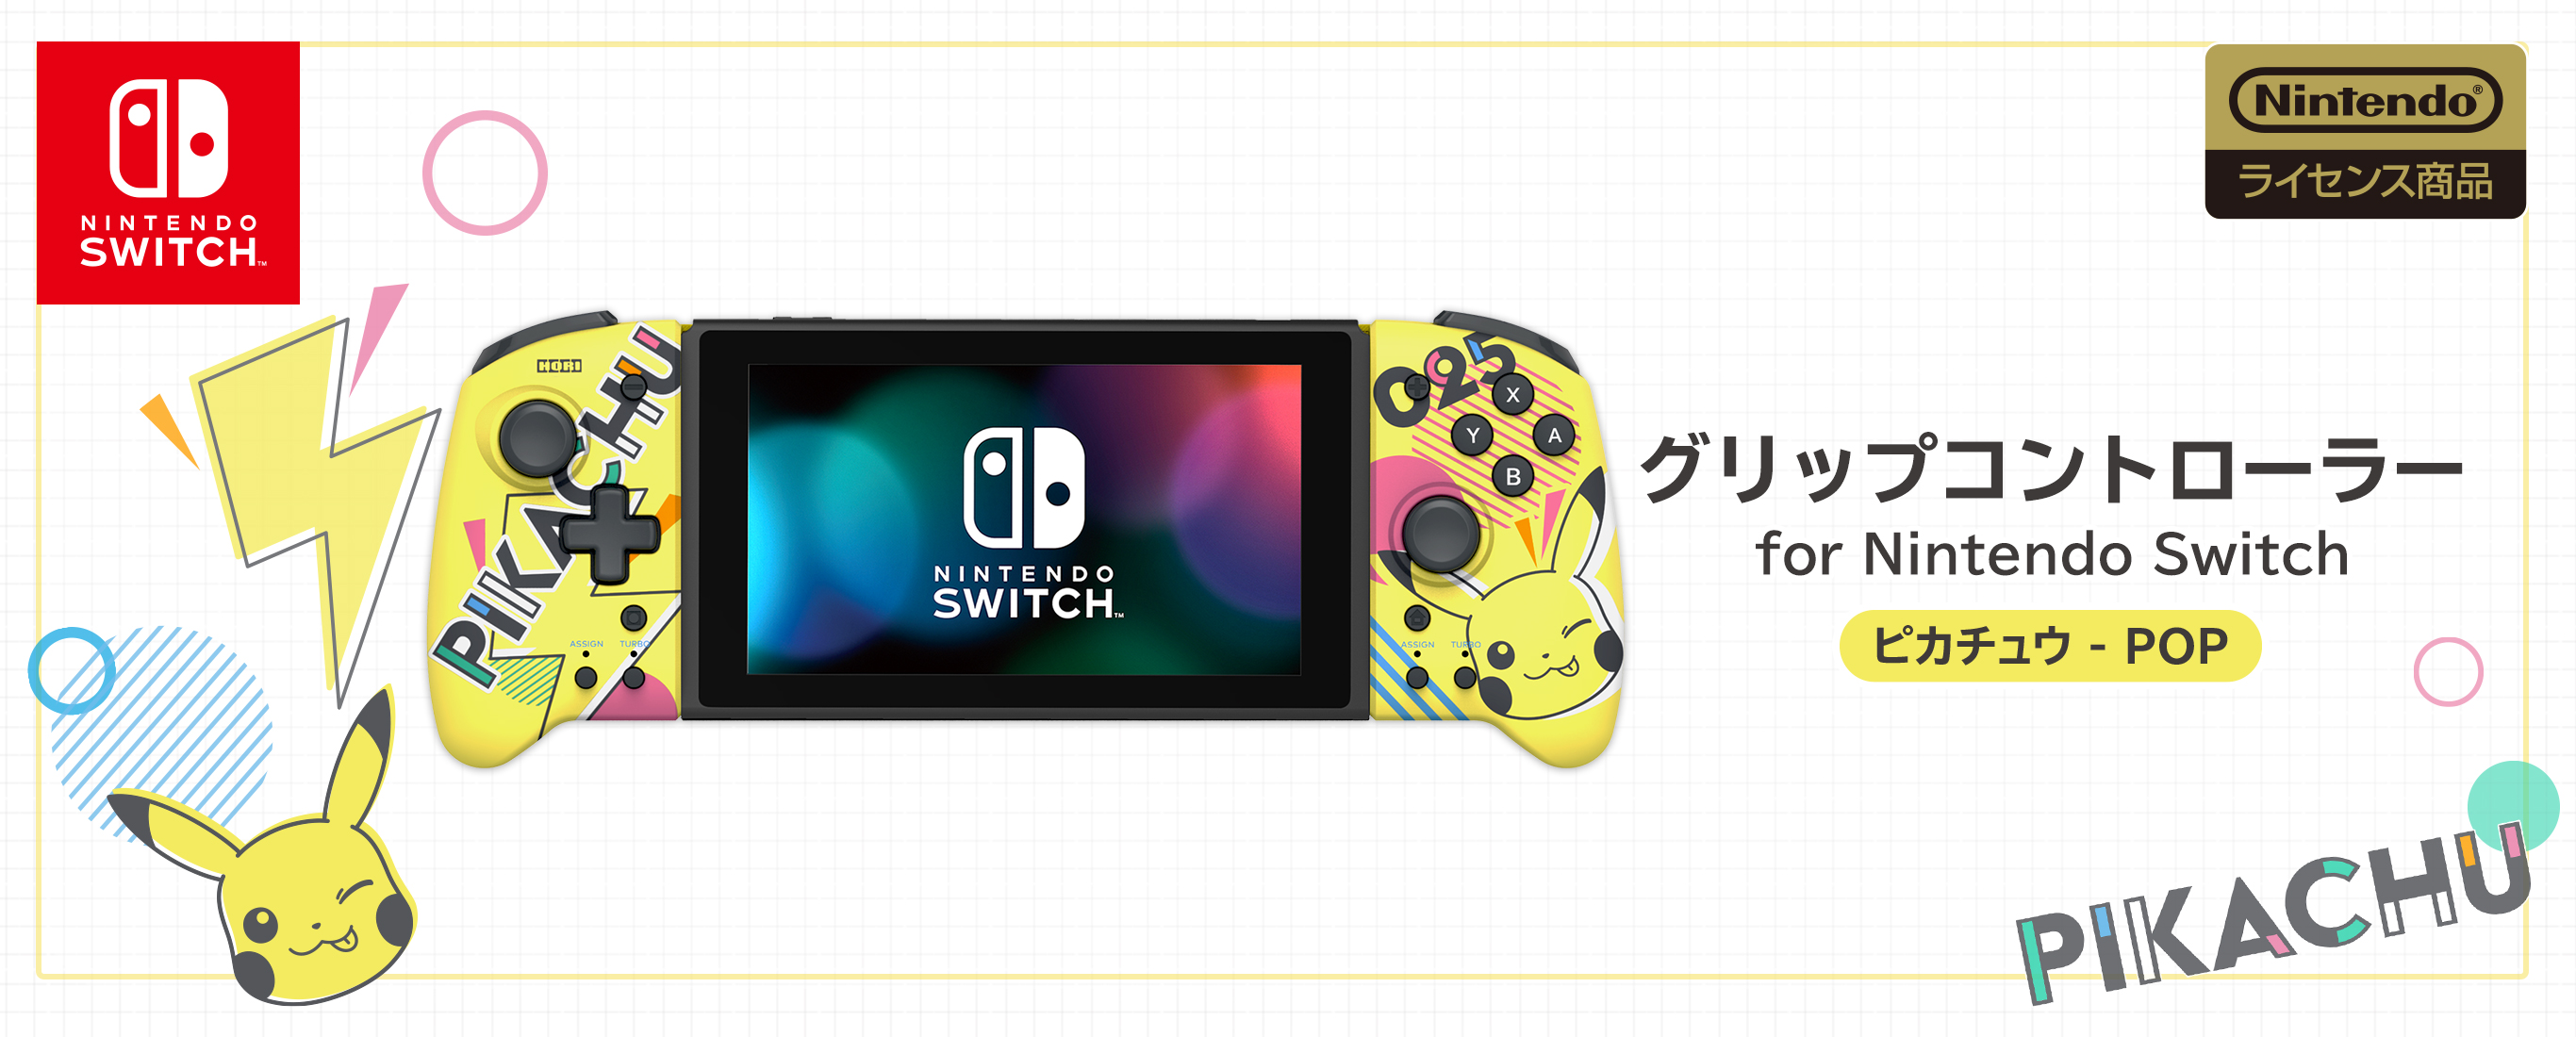 株式会社 HORI | グリップコントローラー for Nintendo Switch ...